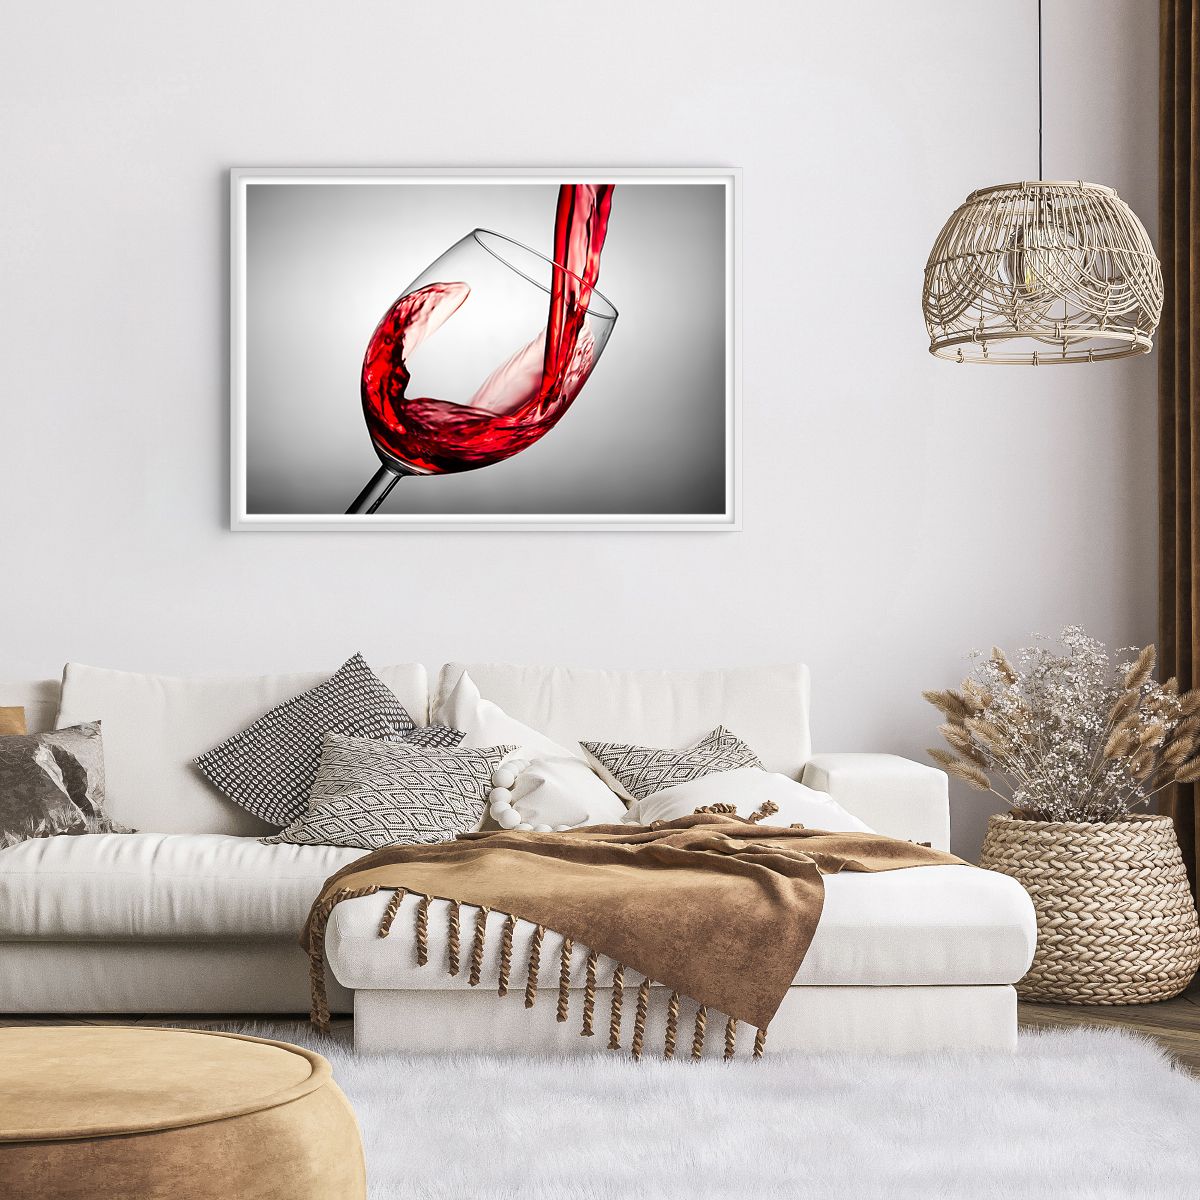 Affiche dans un cadre blanc Verre De Vin, Affiche dans un cadre blanc Vin Rouge, Affiche dans un cadre blanc La Gastronomie, Affiche dans un cadre blanc Jeu, Affiche dans un cadre blanc Pain Grillé